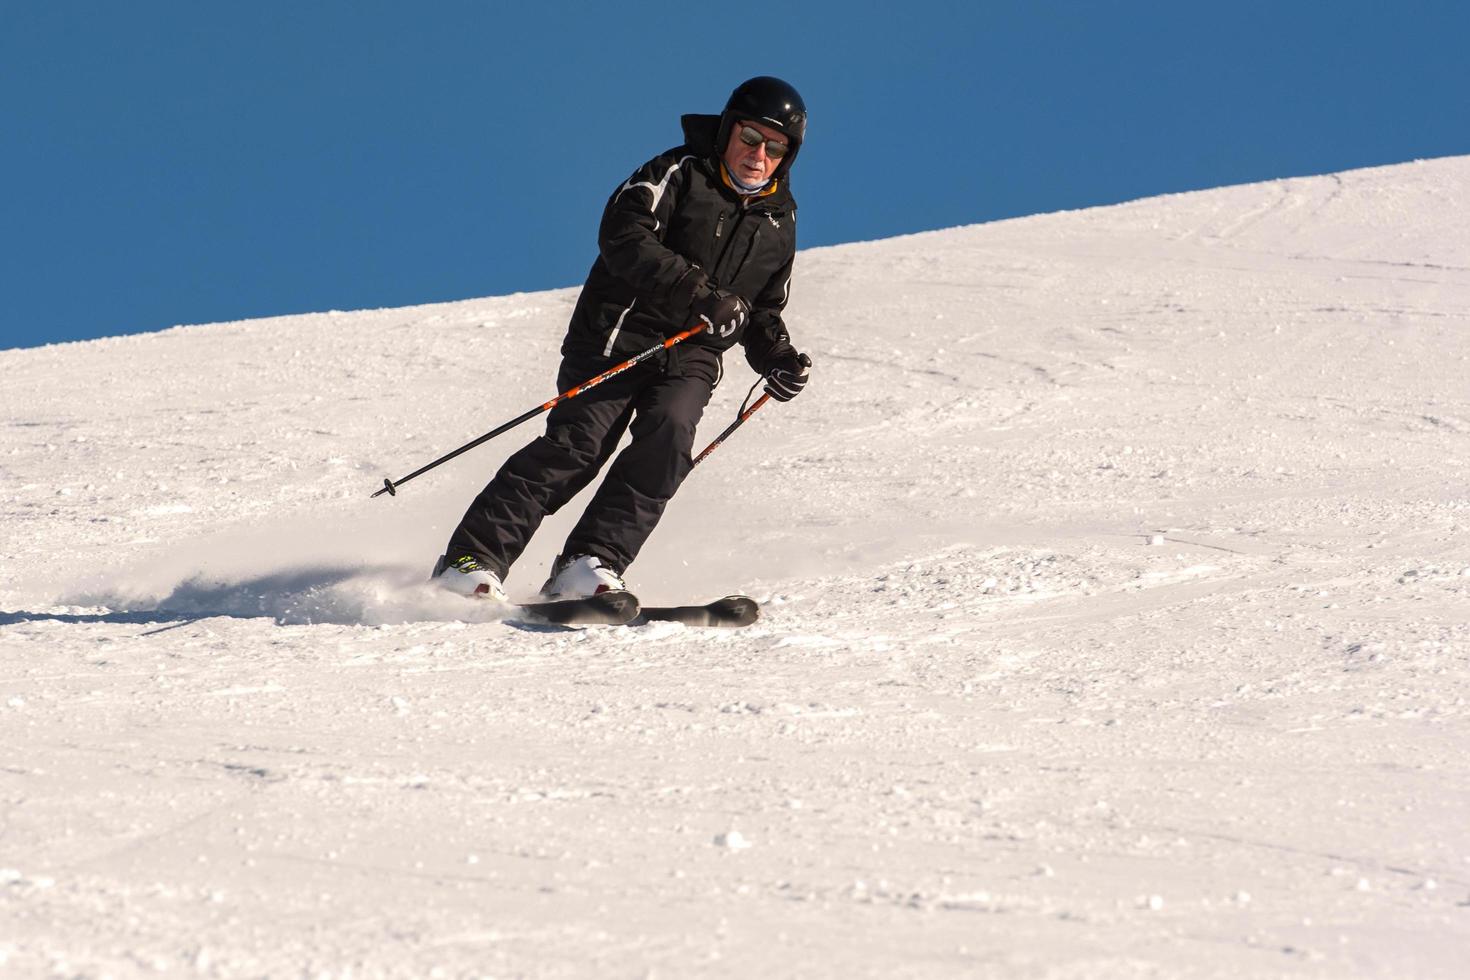 grandvalira, andorra, 03 de janeiro de 2021 - jovem esquiando nos pirineus na estação de esqui de grandvalira foto